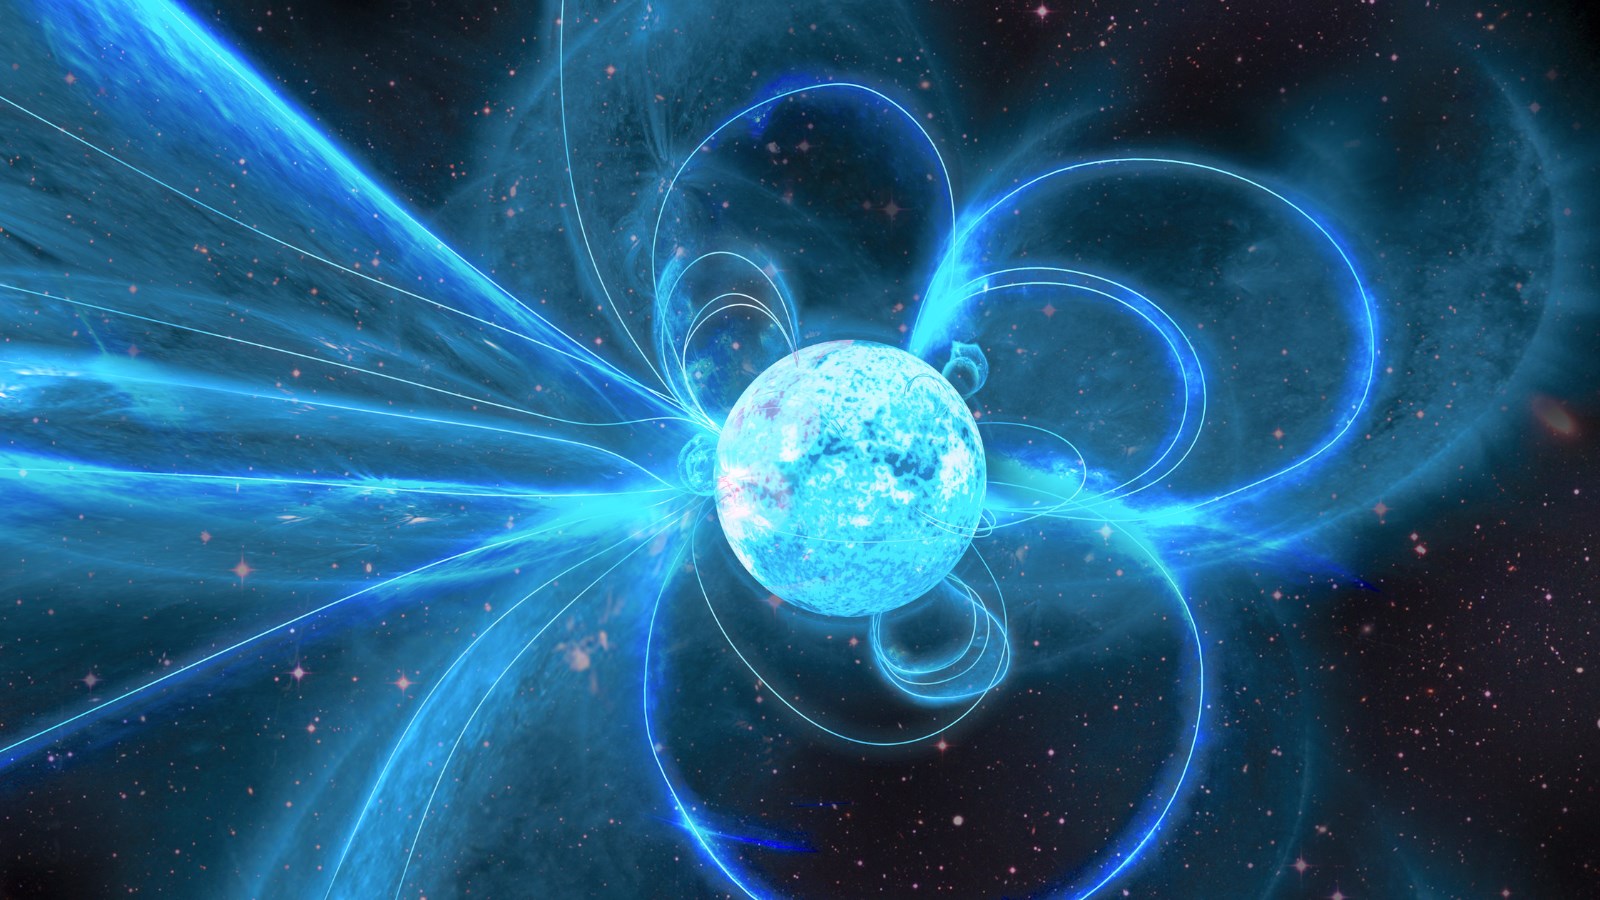 Beklenmedik Bir Olay: Magnetarın Hayata Dönüşü